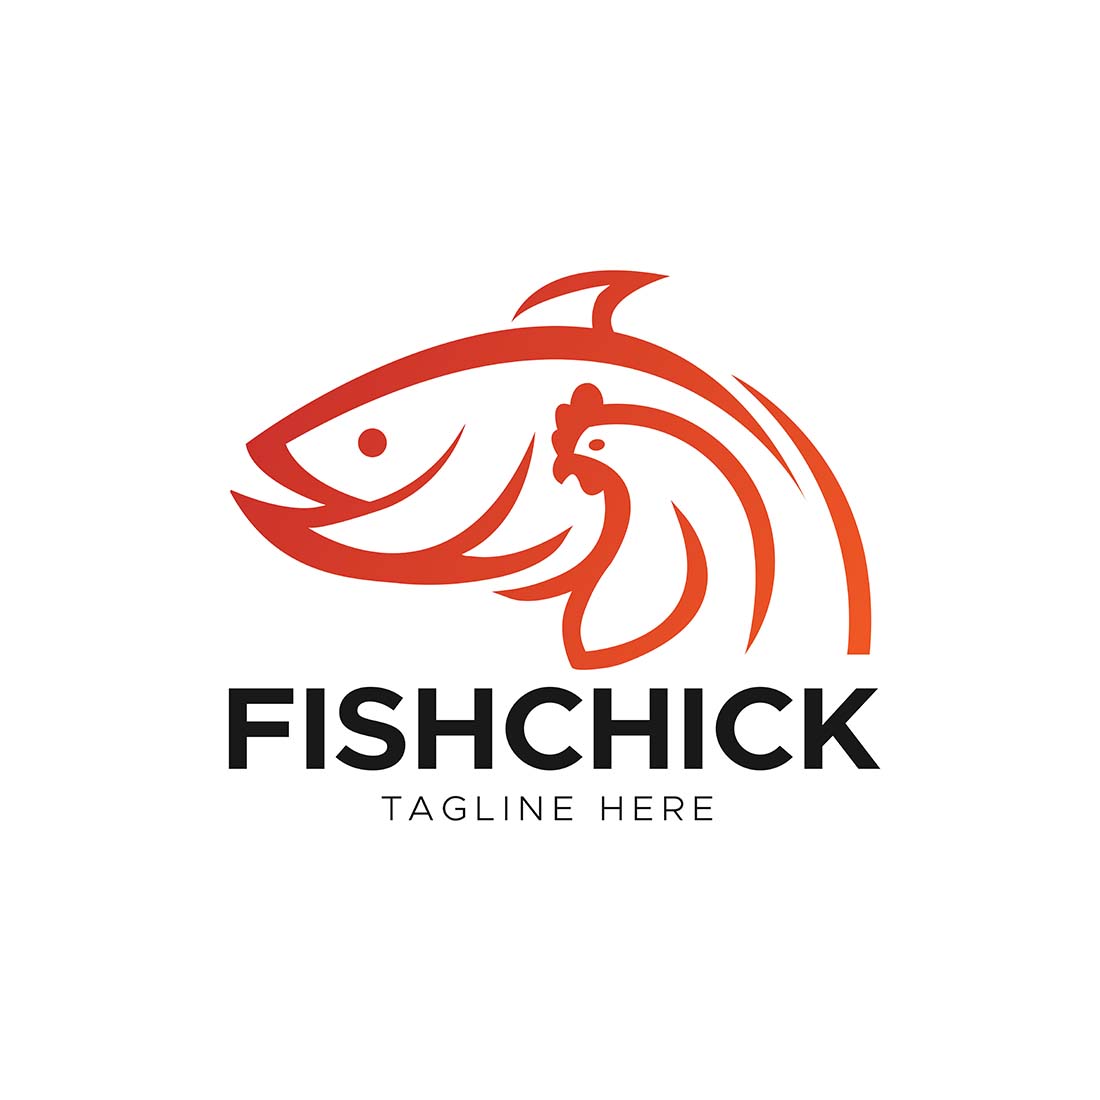 fishchick logo 901